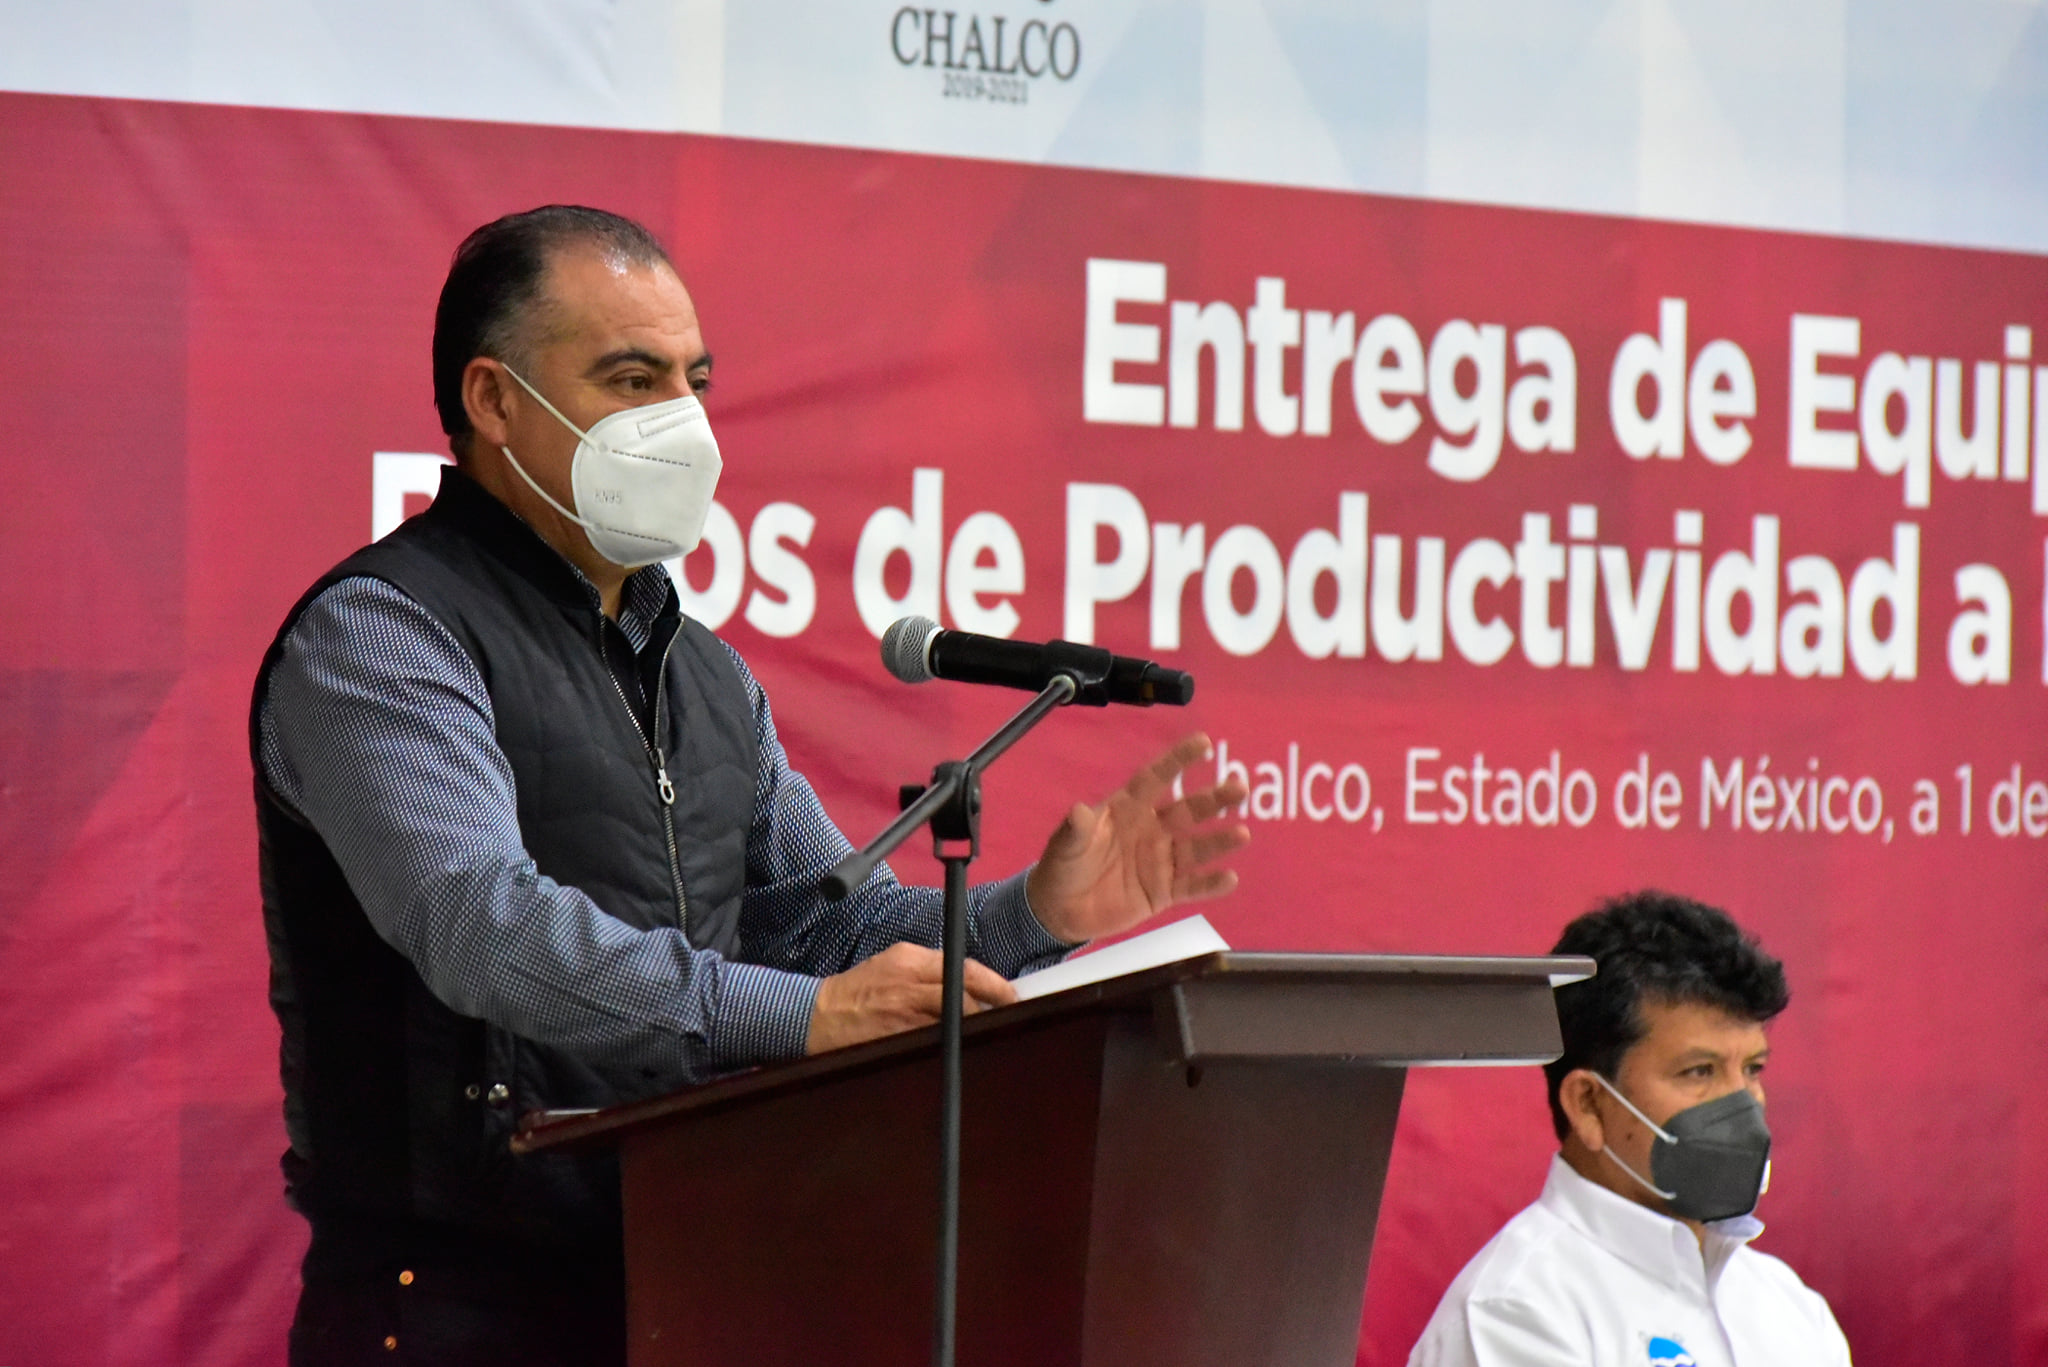 Boletín 199.-Miguel Gutiérrez entrega 4 vehículos operativos y bonos de productividad a personal de ODAPAS Chalco